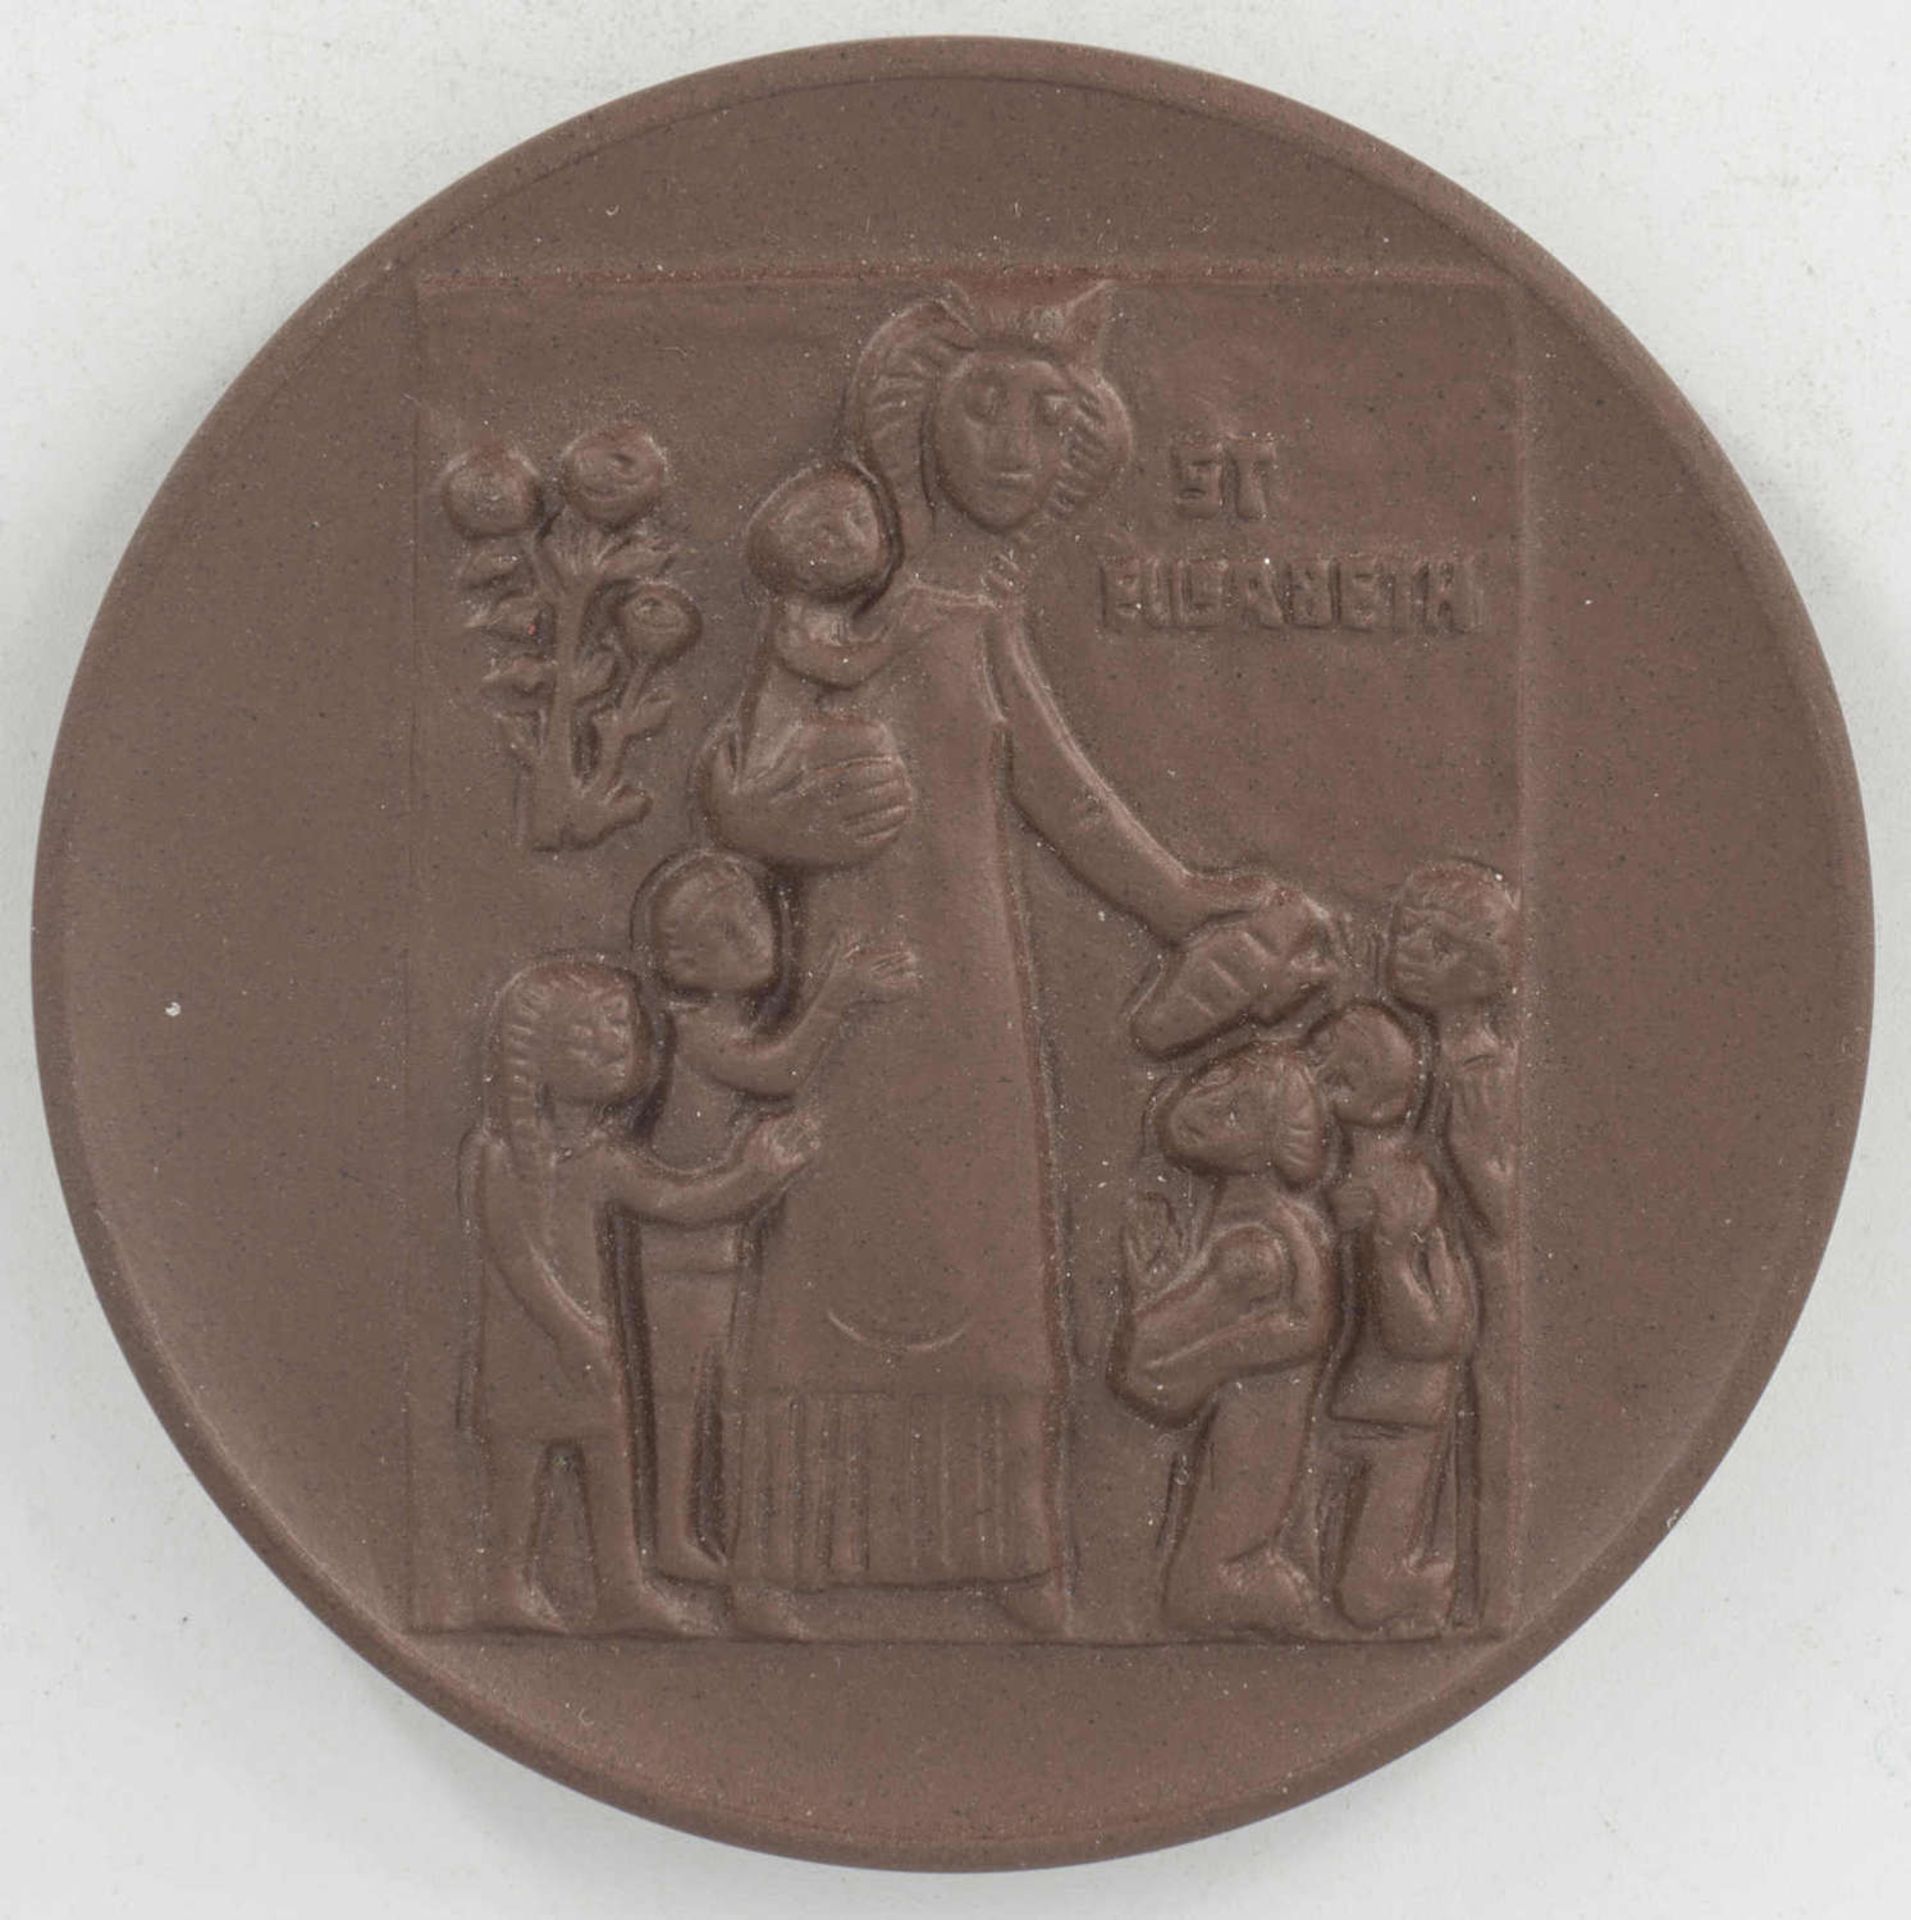 Porzellan -Medaille "Elisabeth 750 Jahre". Meisen. Durchmesser: ca. 65 mm.